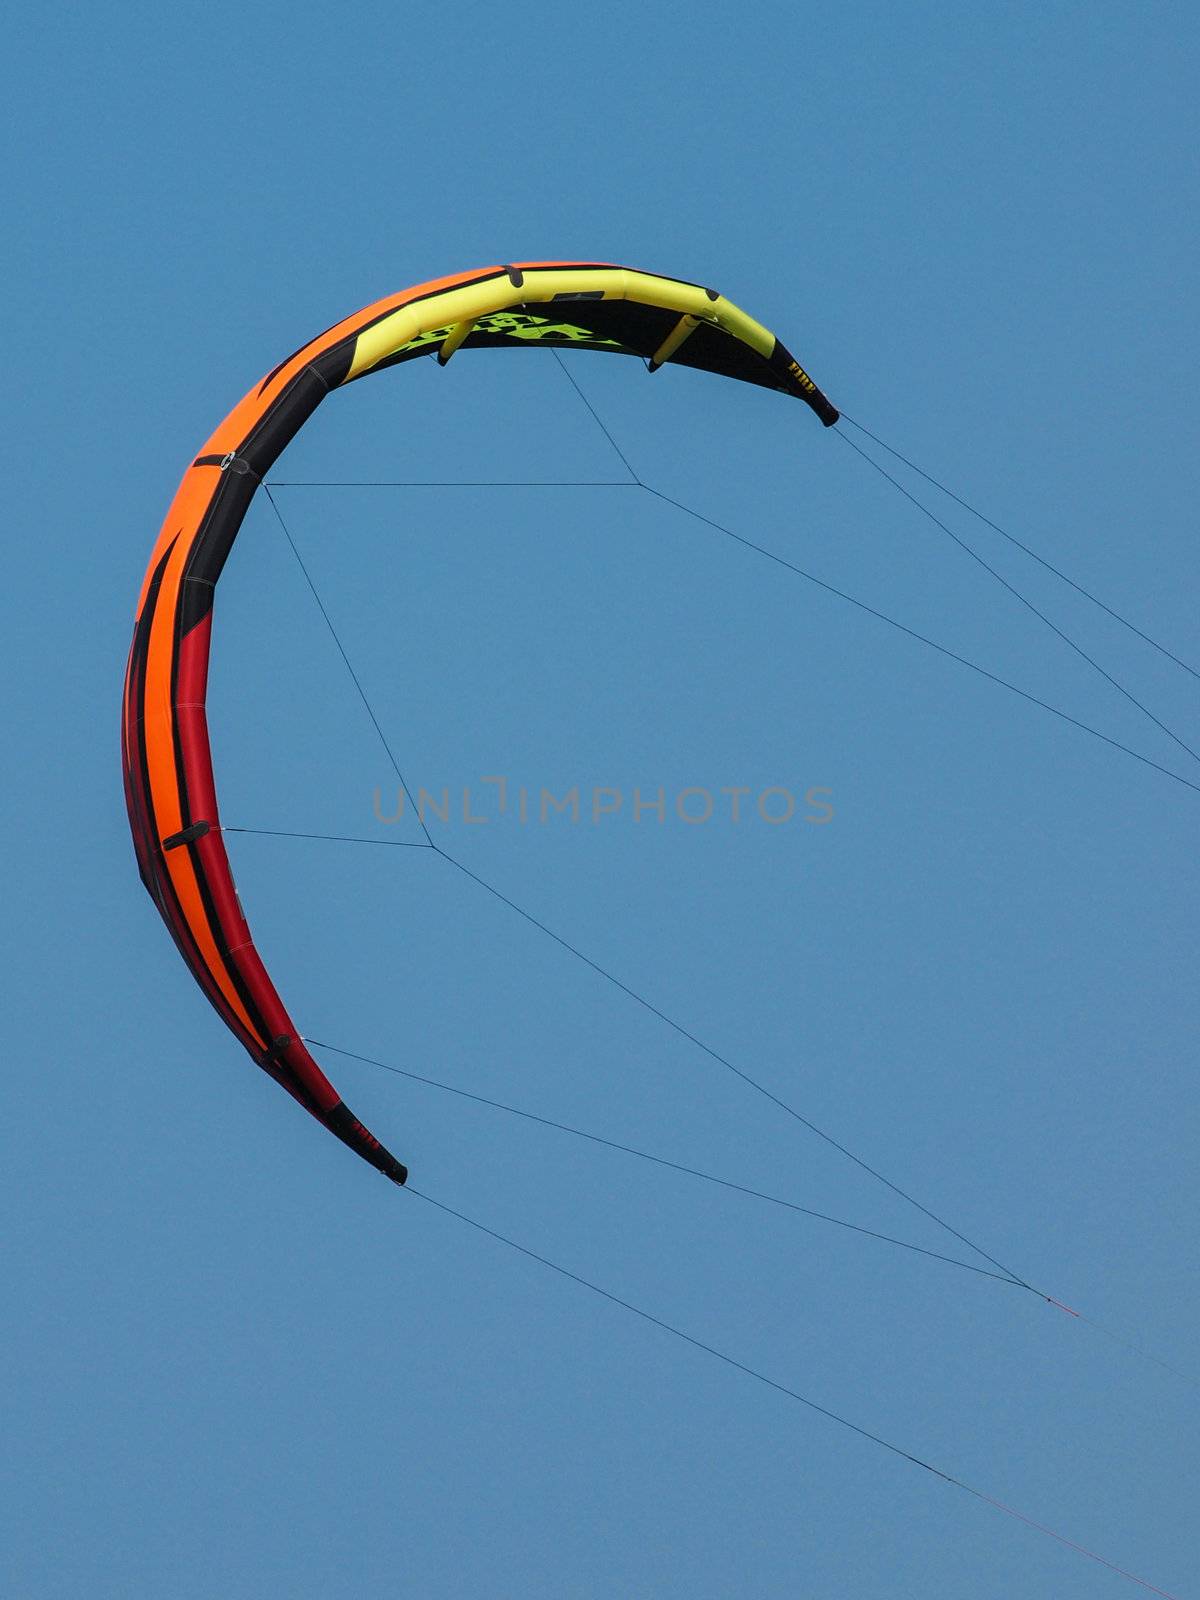 kite for kitesurfing on the blue sky